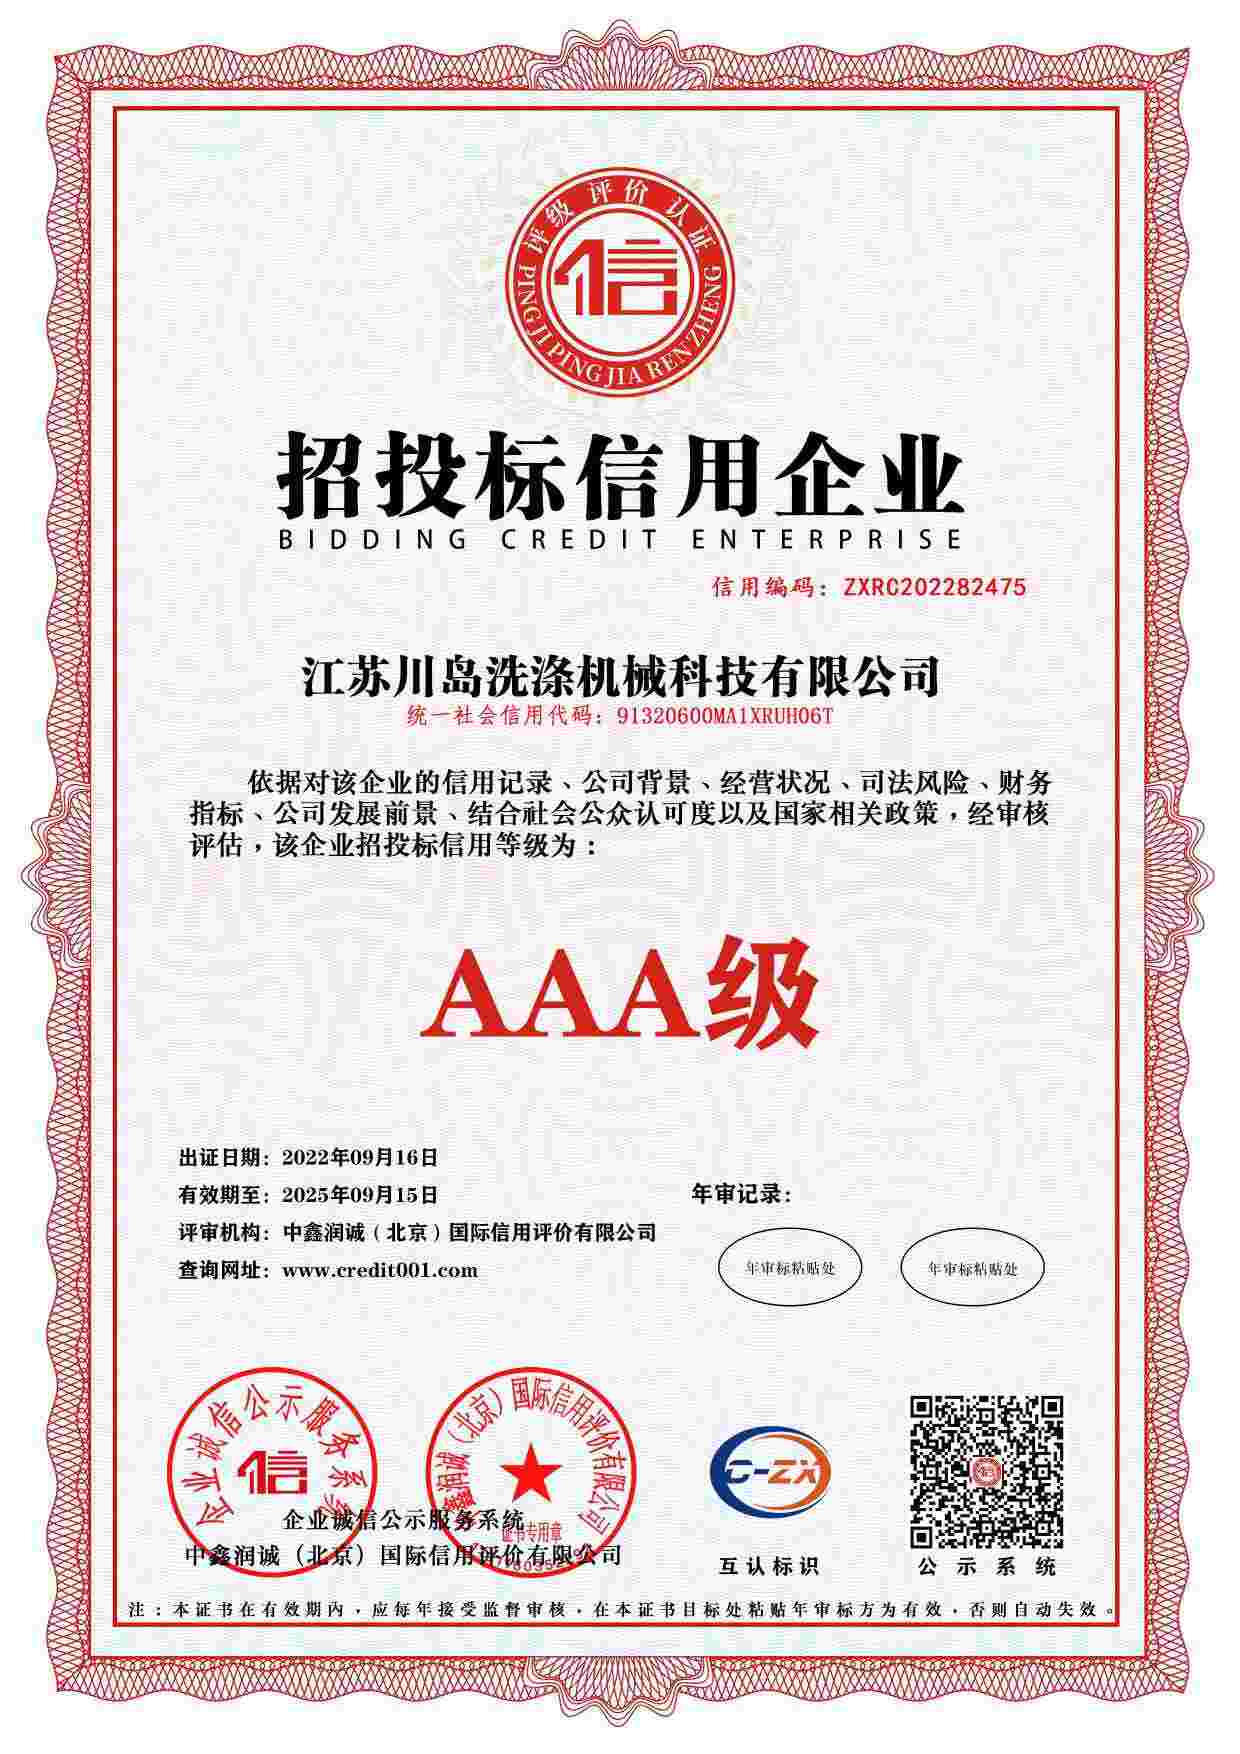 Сертификат кредитного рейтинга предприятия (7)